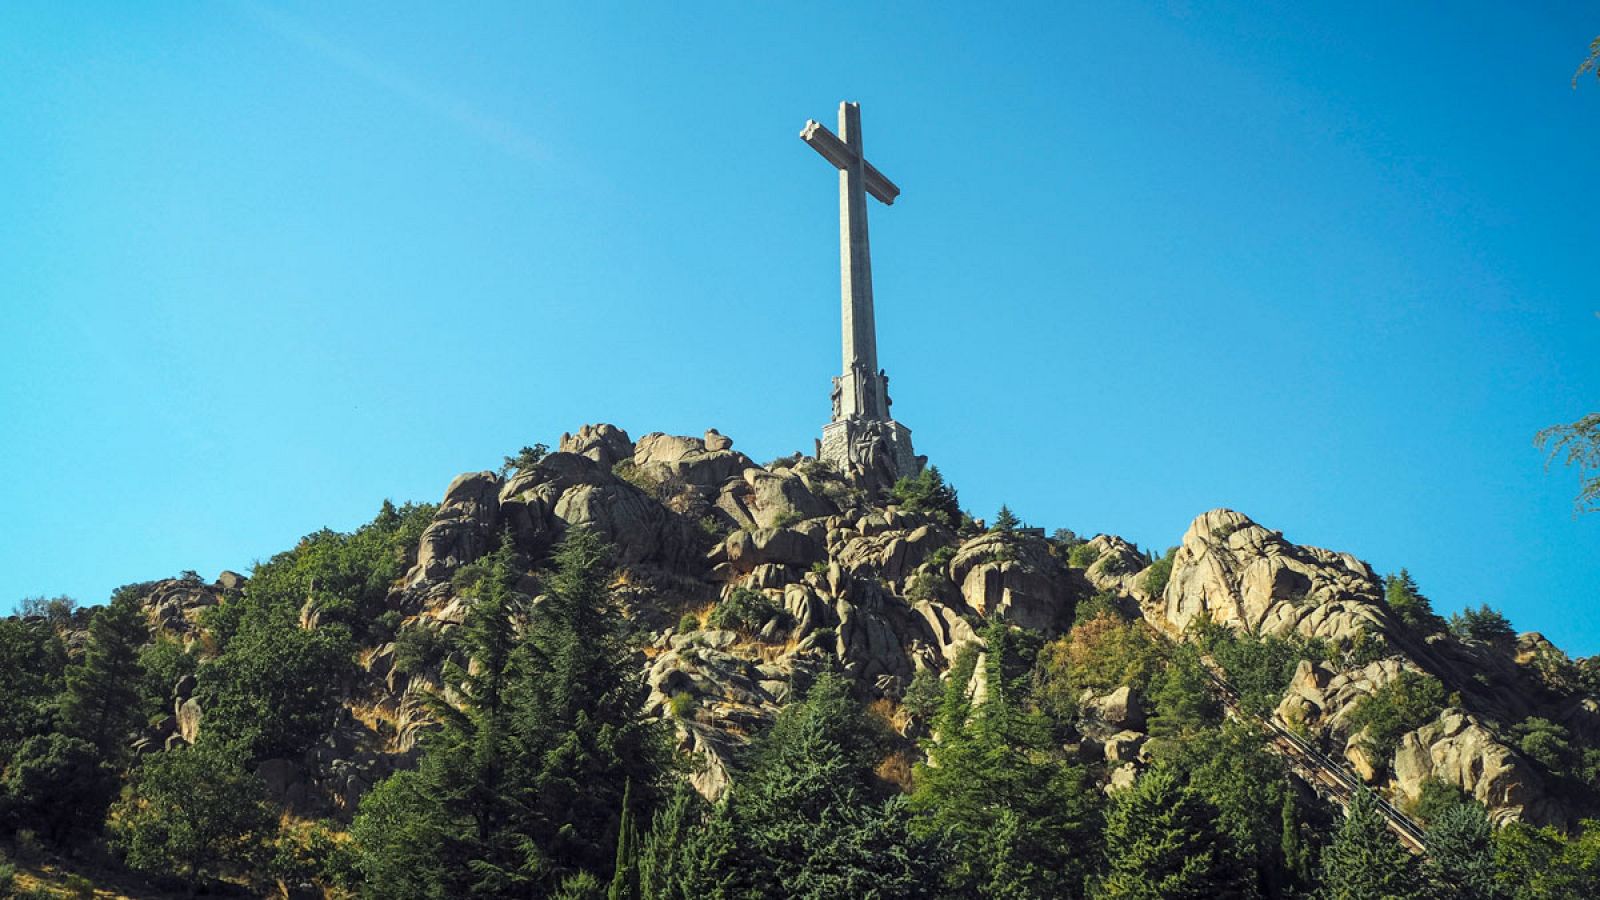 Vista general del Valle de los Caídos, un monumento construido entre 1940 y 1958, considerado como el mayor símbolo del franquismo en España.